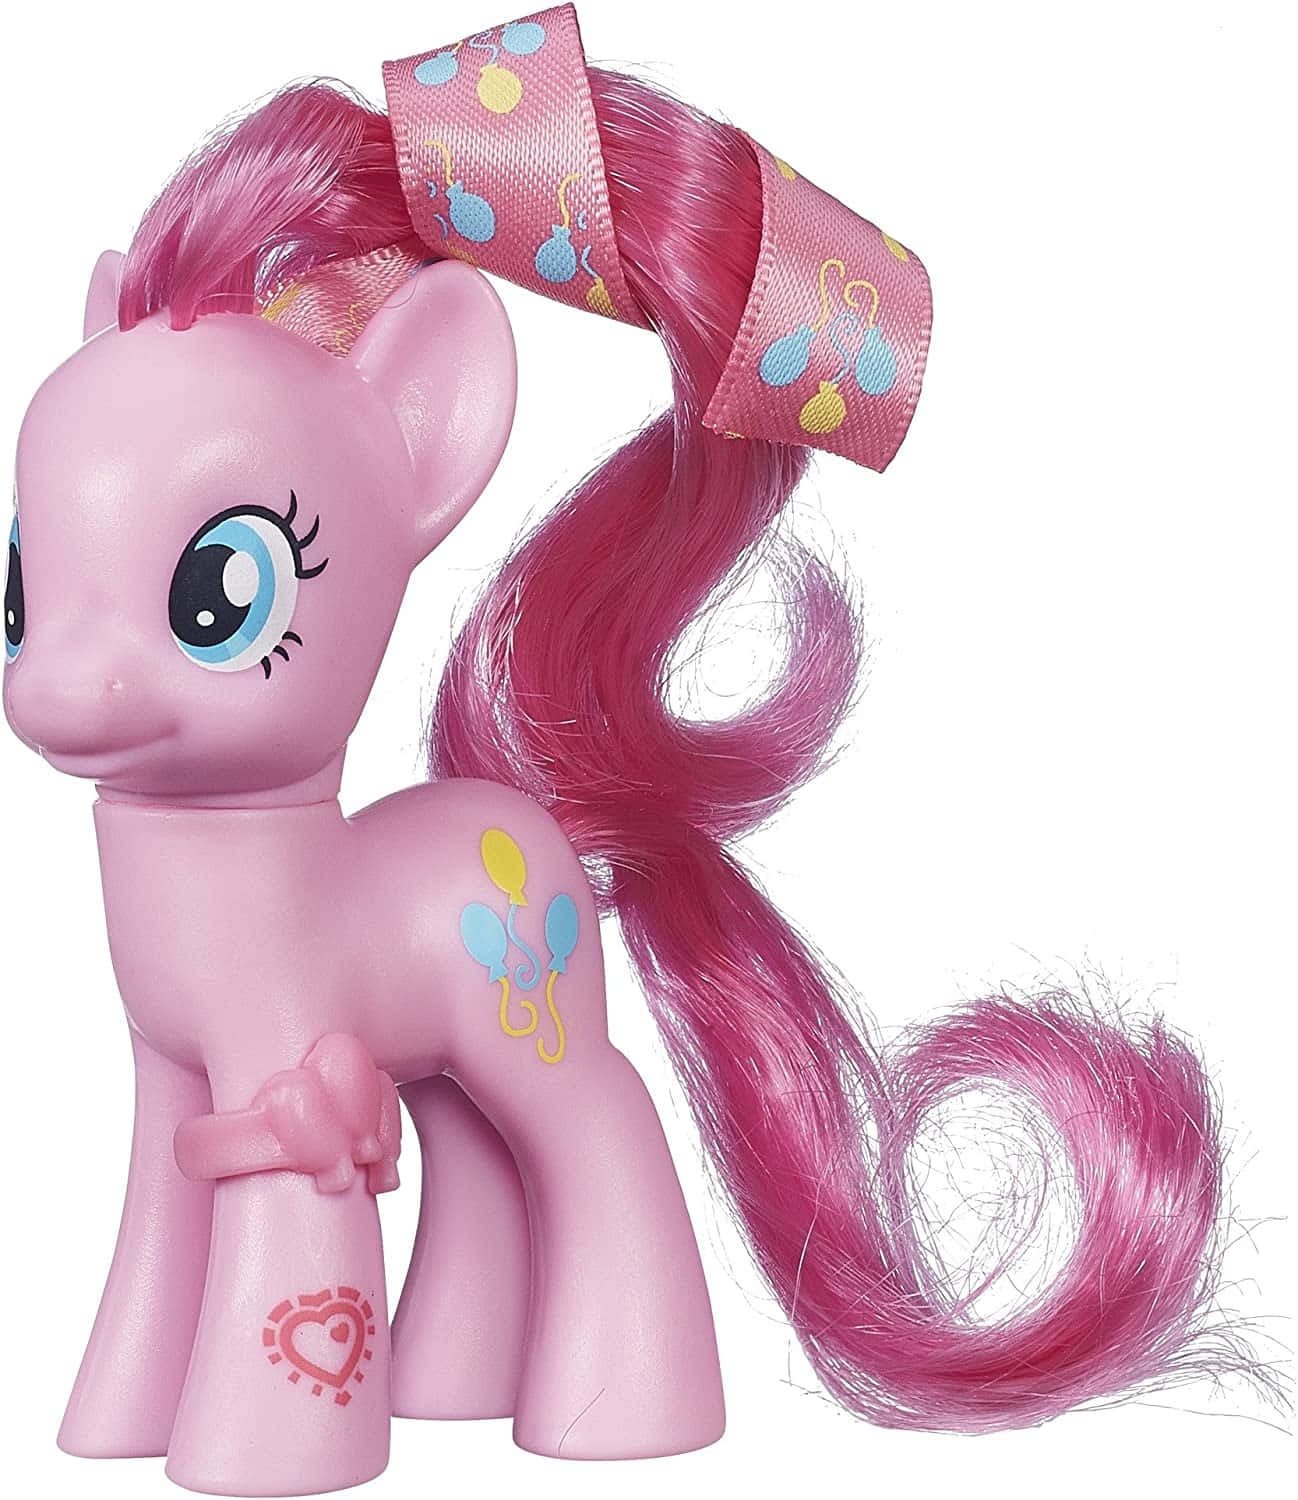 Immaginedella Figura Di Pinkie Pie Di My Little Pony.